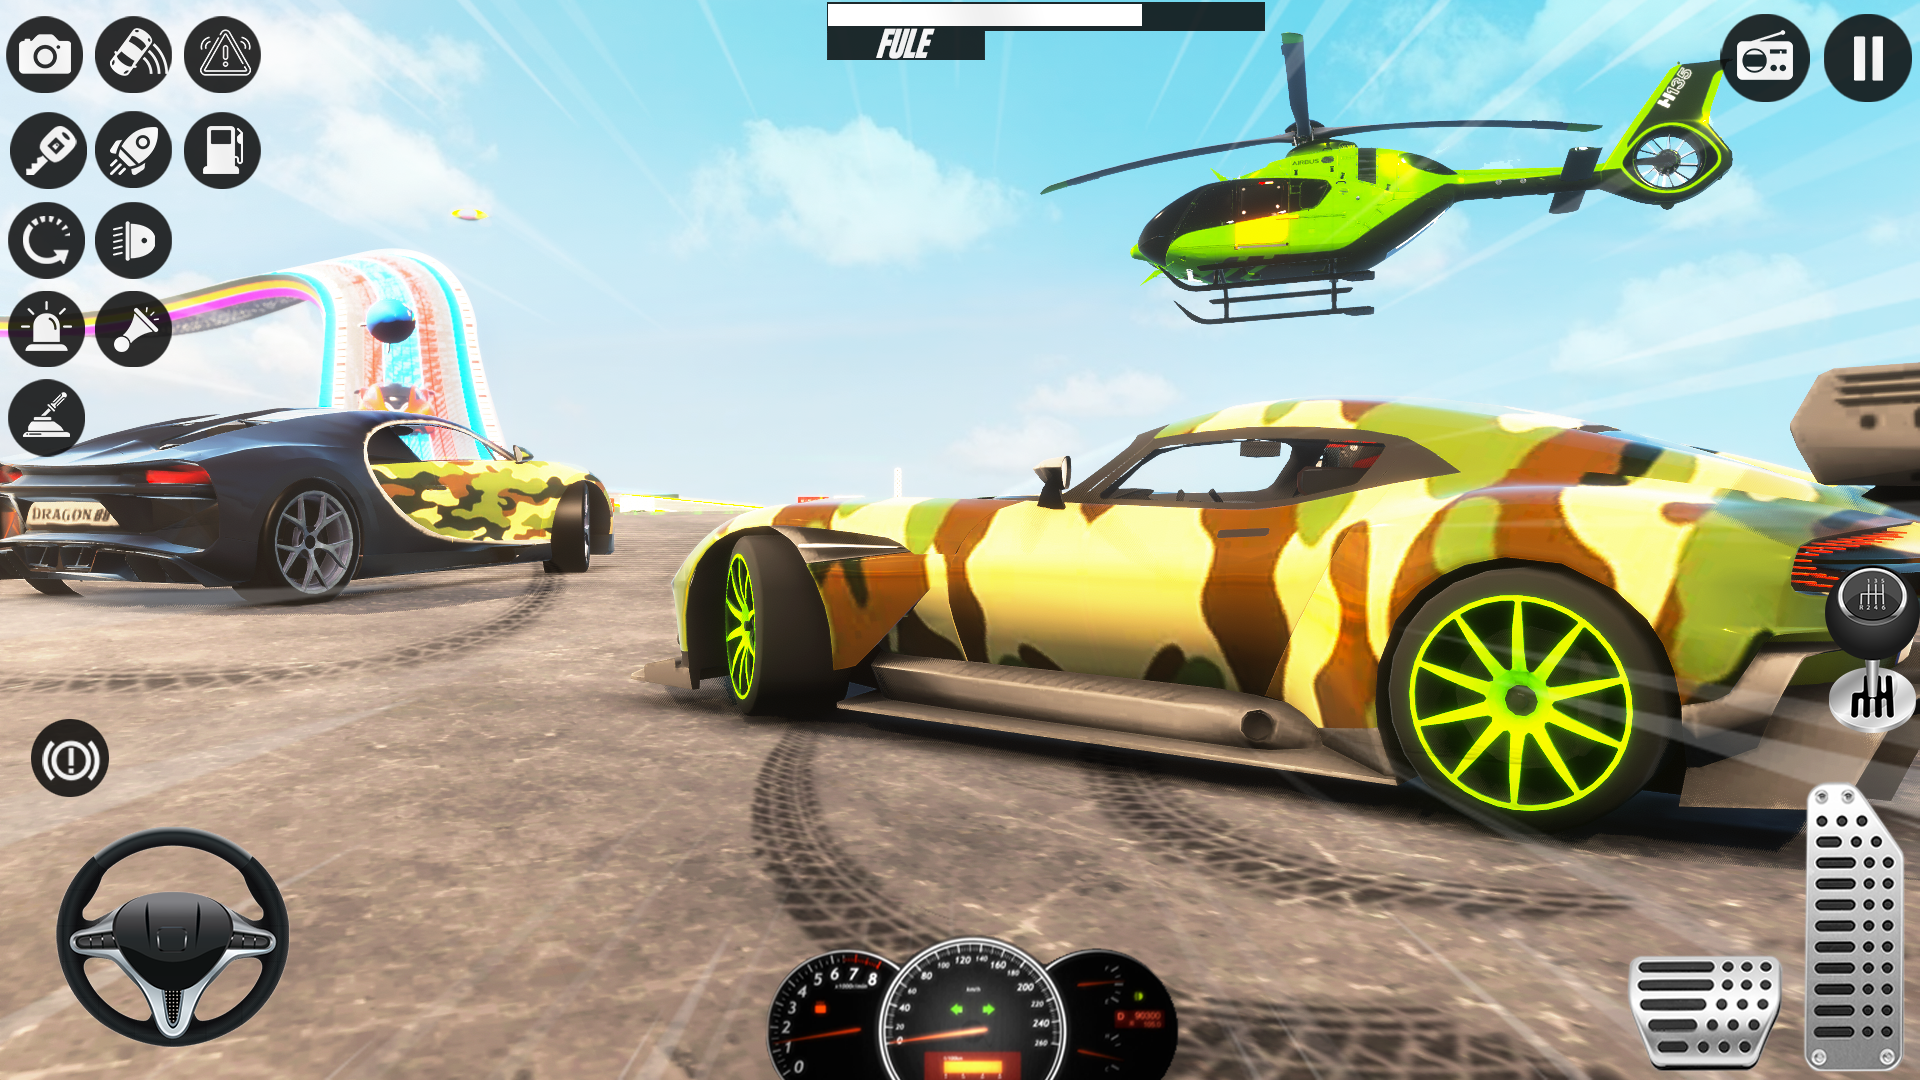 Screenshot 1 of Армейская школа вождения автомобиля игры 1.0.12